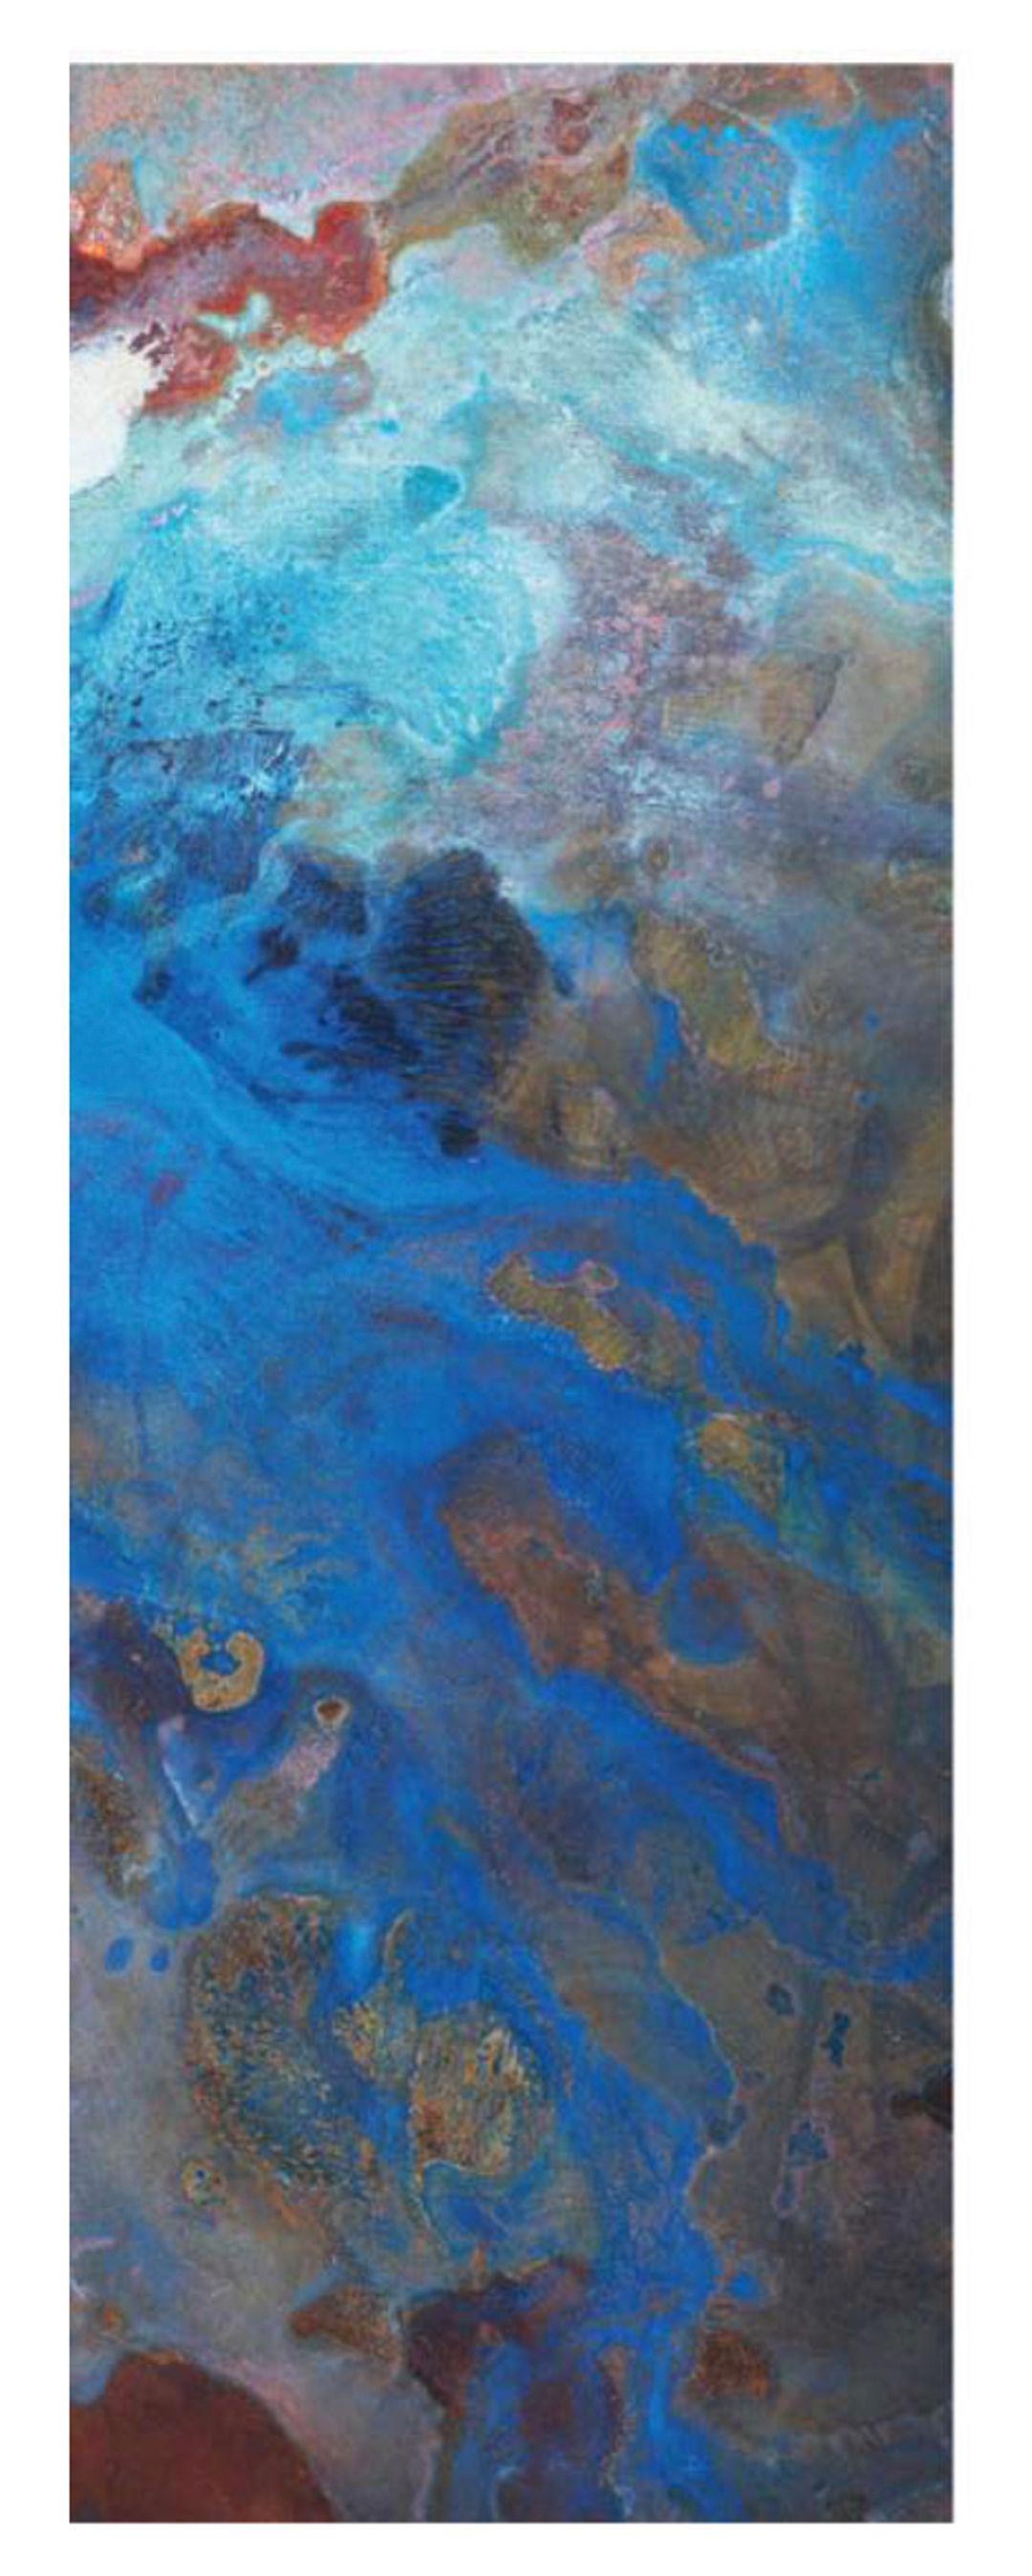 La collection Star Dust de Daishi Luo offre une variété de peintures sur cuivre soigneusement sélectionnées. Chaque œuvre est unique, car les motifs sont réalisés par des réactions chimiques à la surface du cuivre. 

À propos de l'artiste